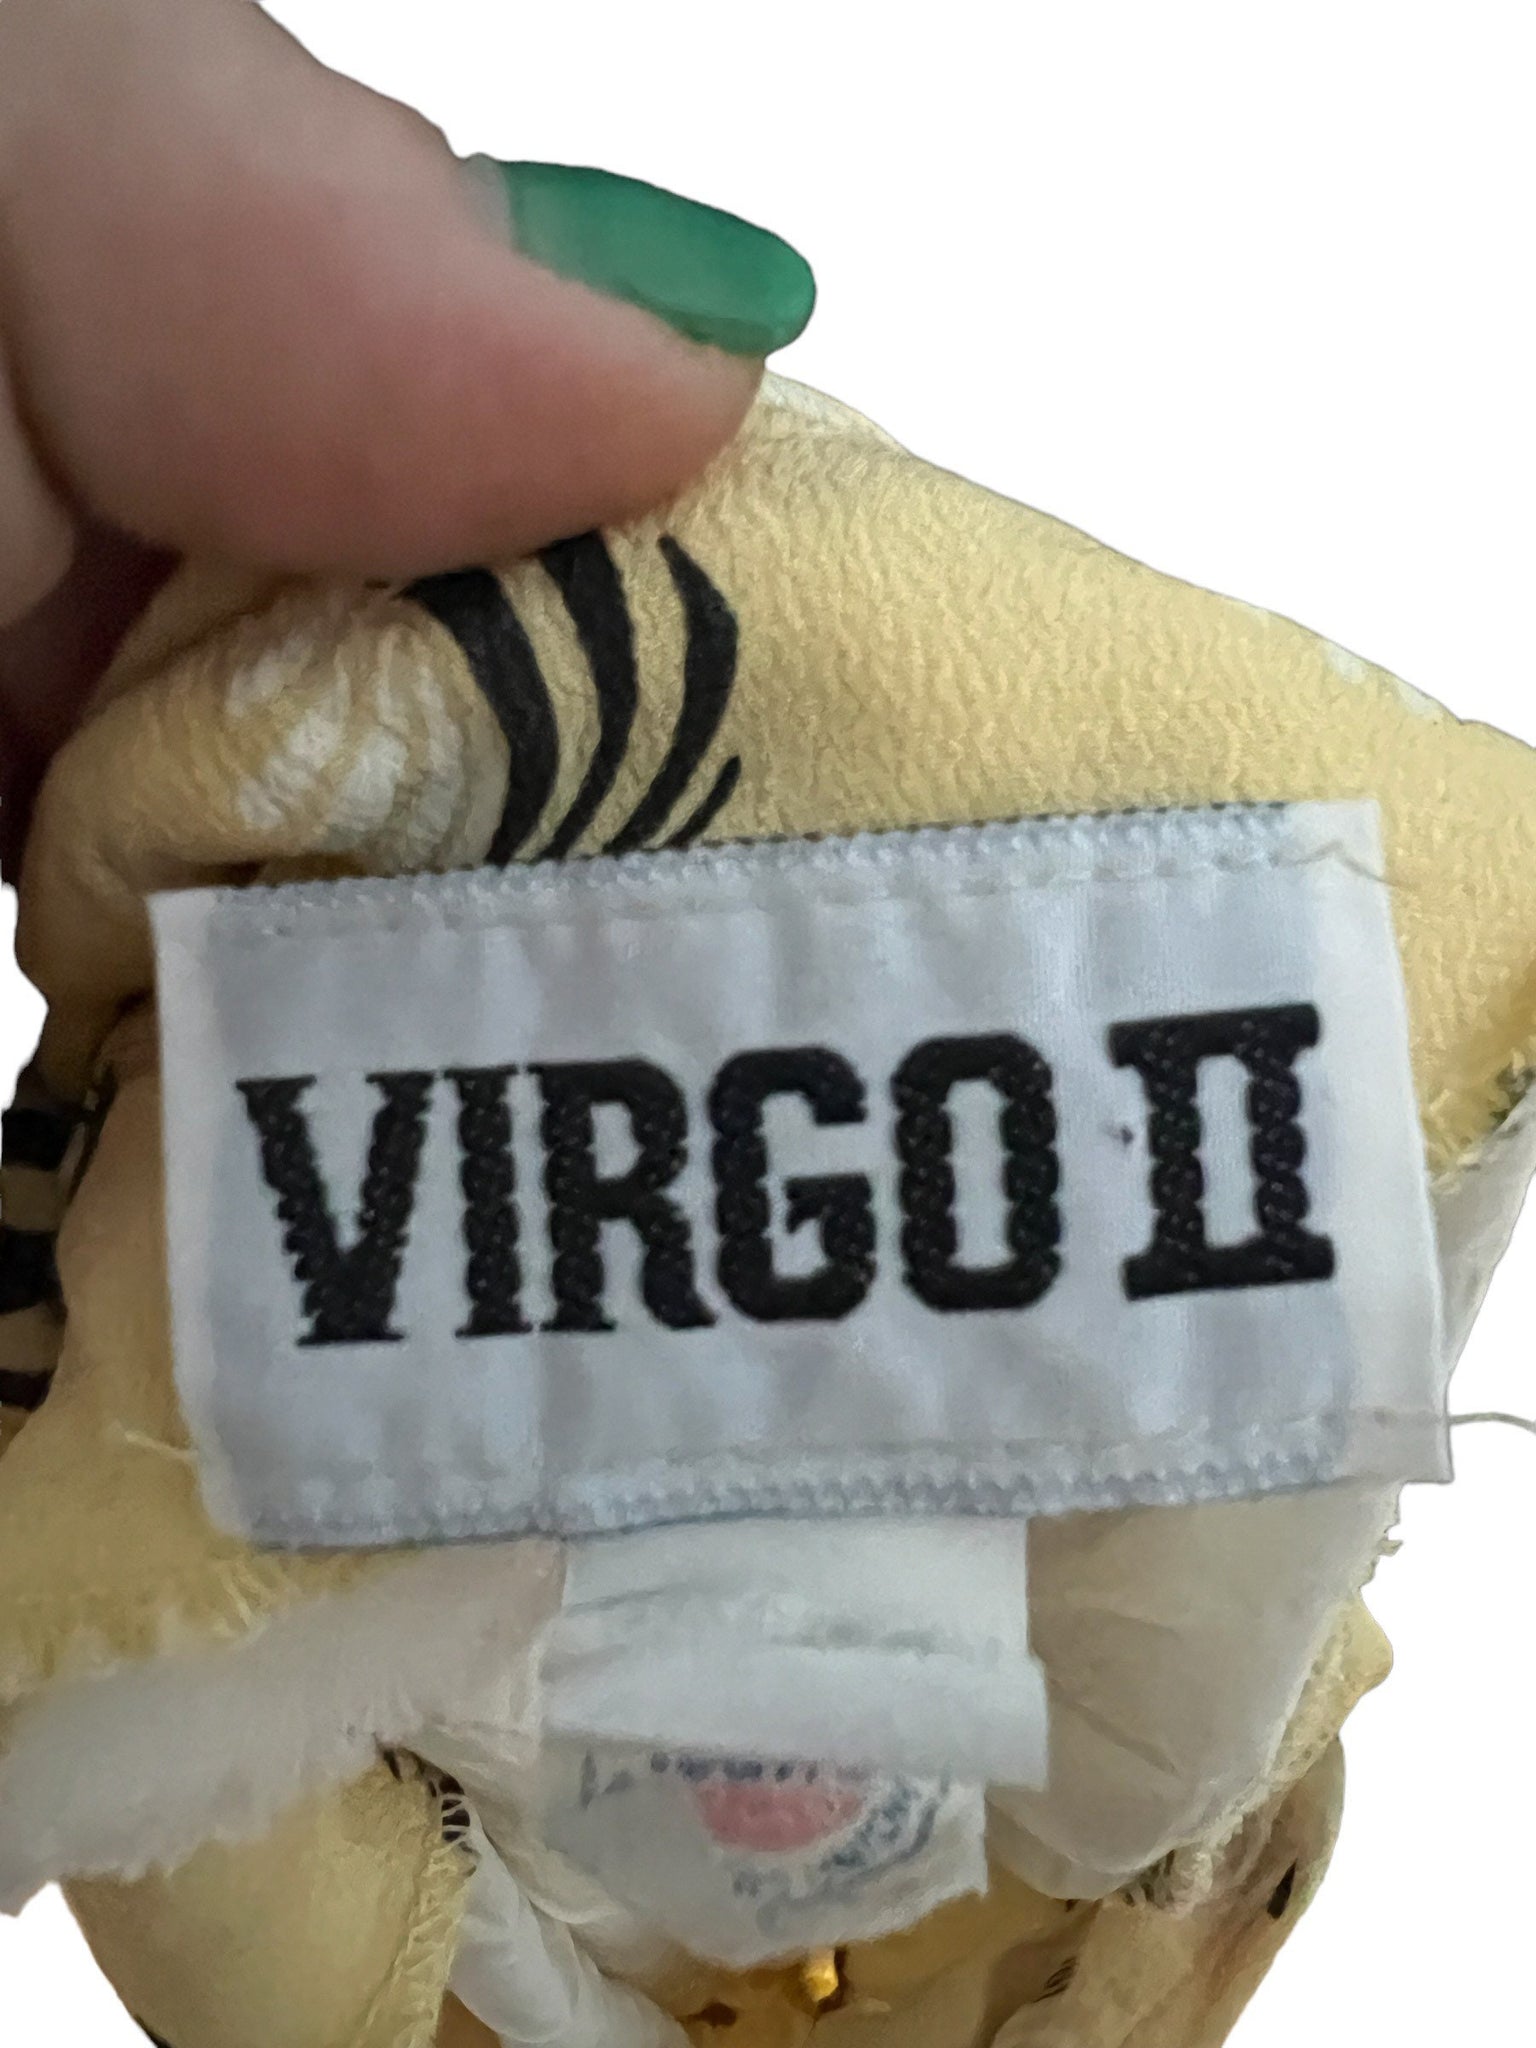 Vintage 80's yellow rayon dress 10 Virgo II